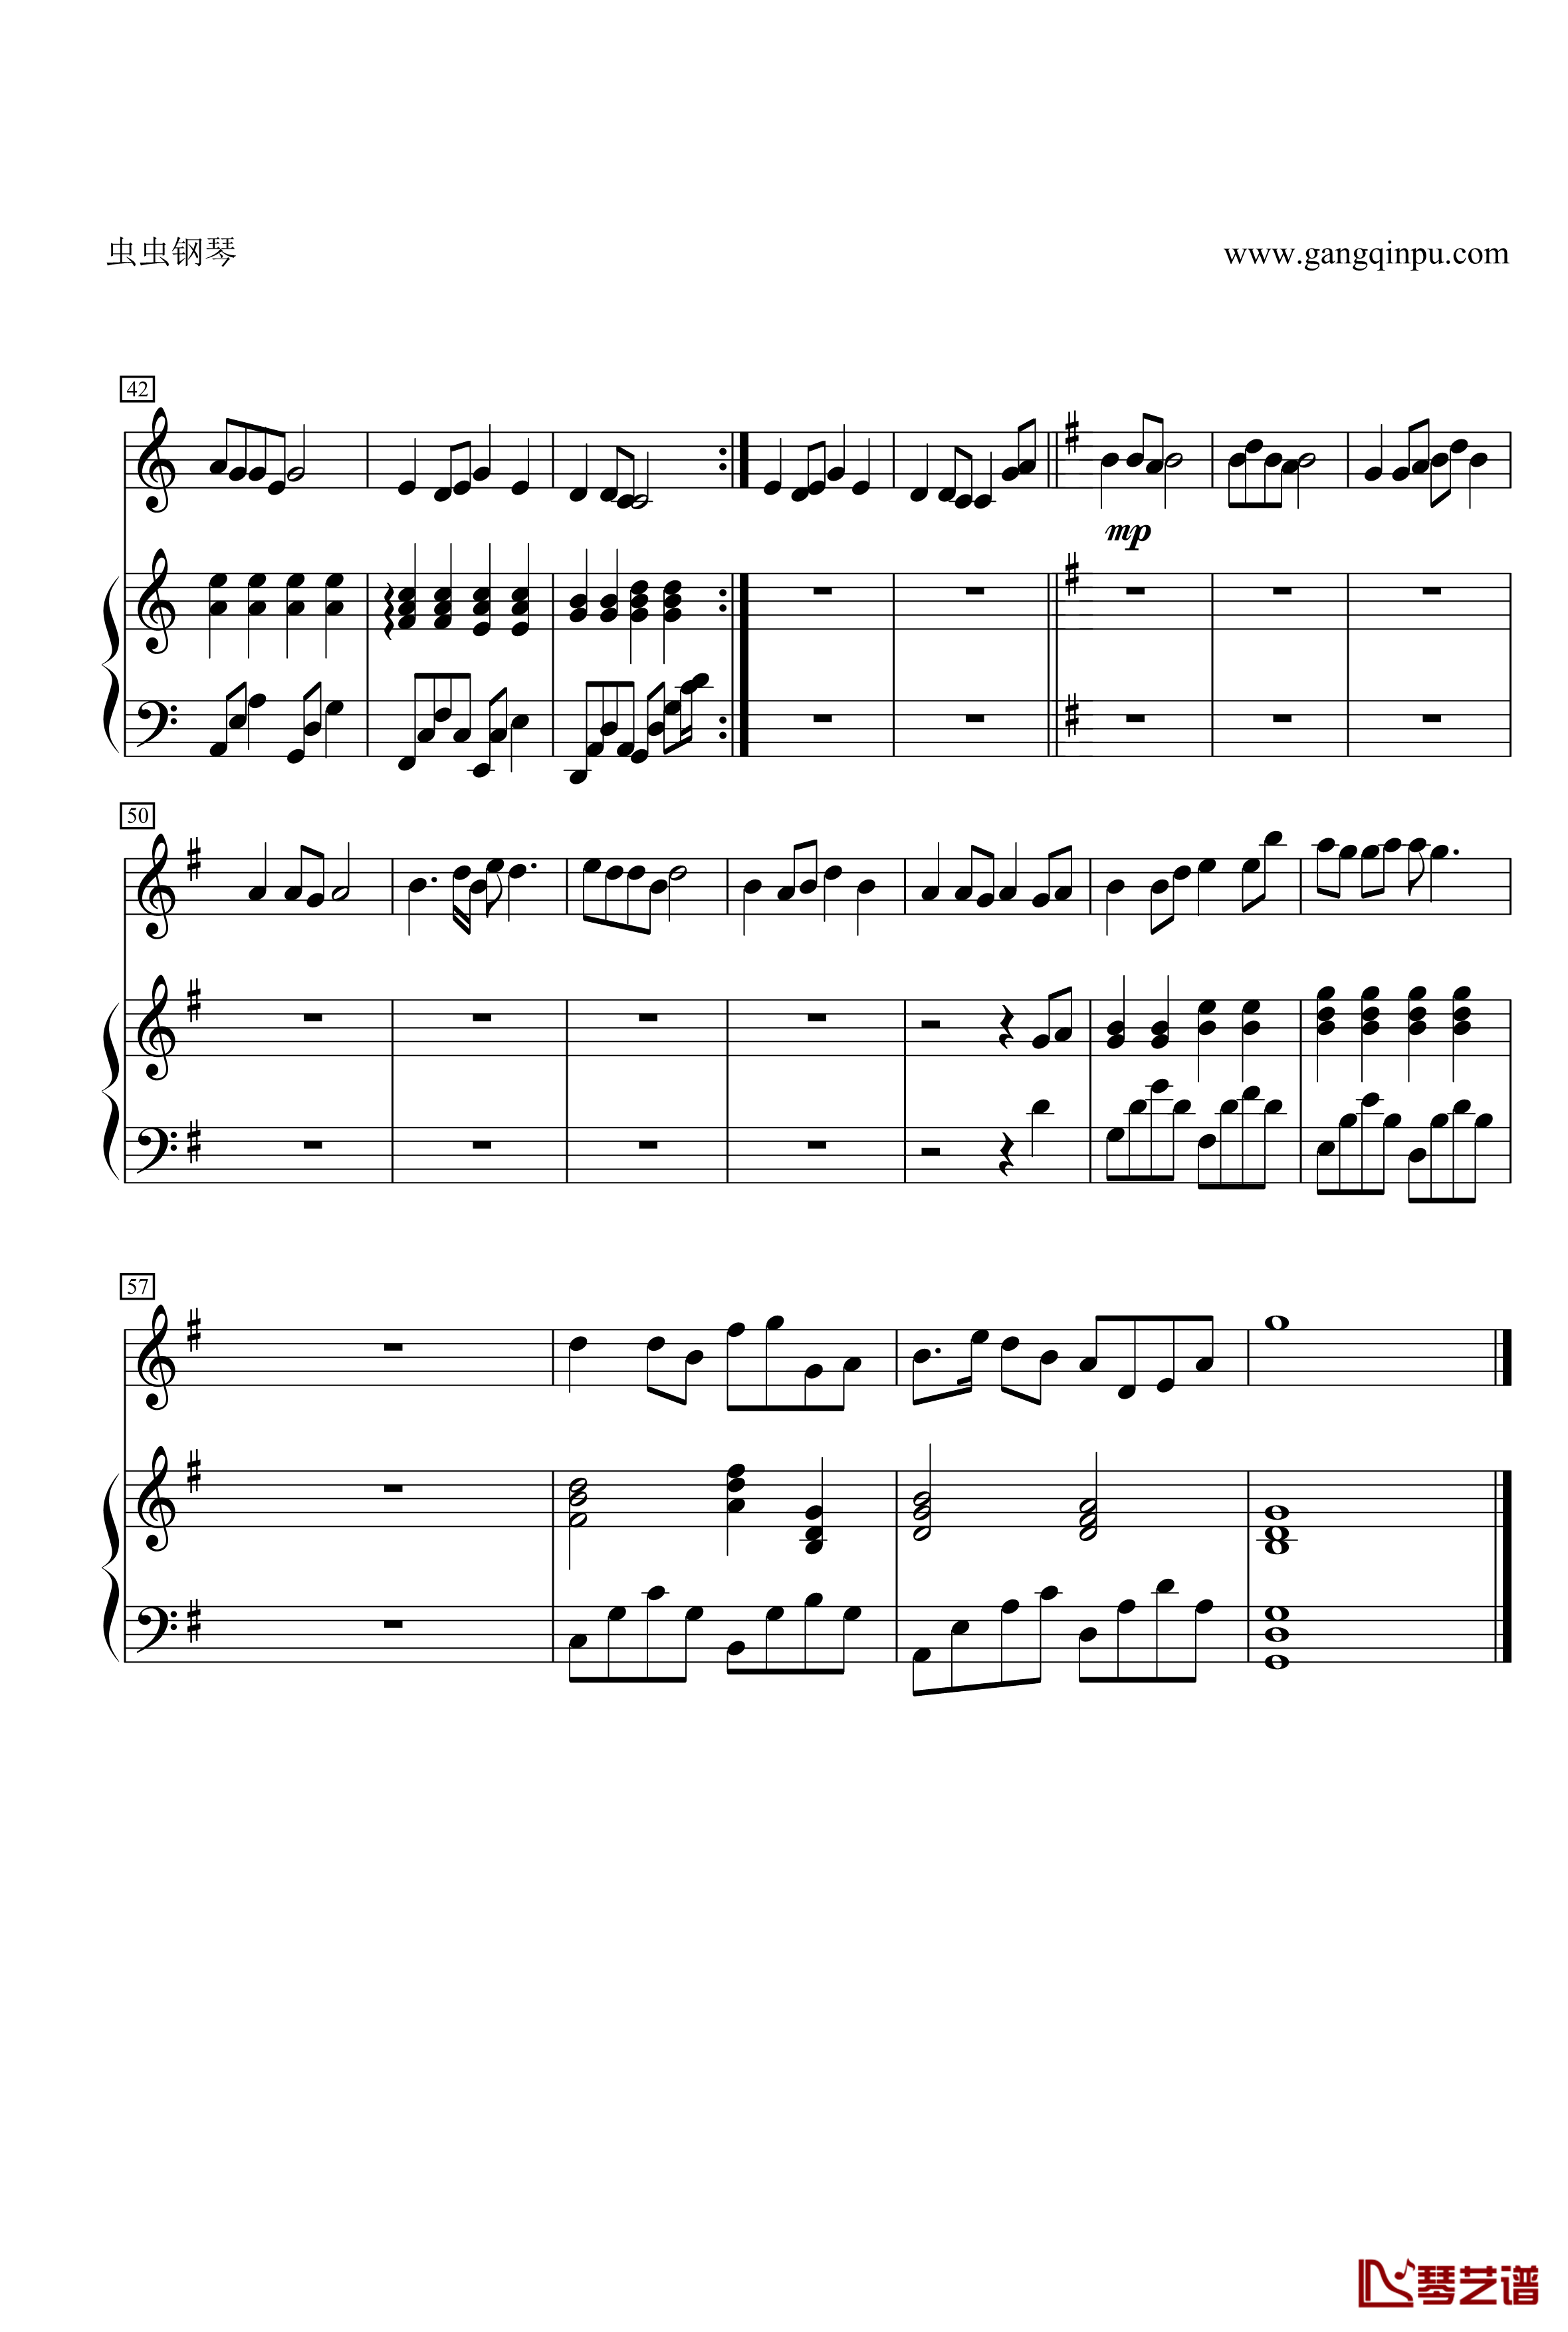 菊花台钢琴谱-二胡对话大提琴 钢琴 总谱-周杰伦4